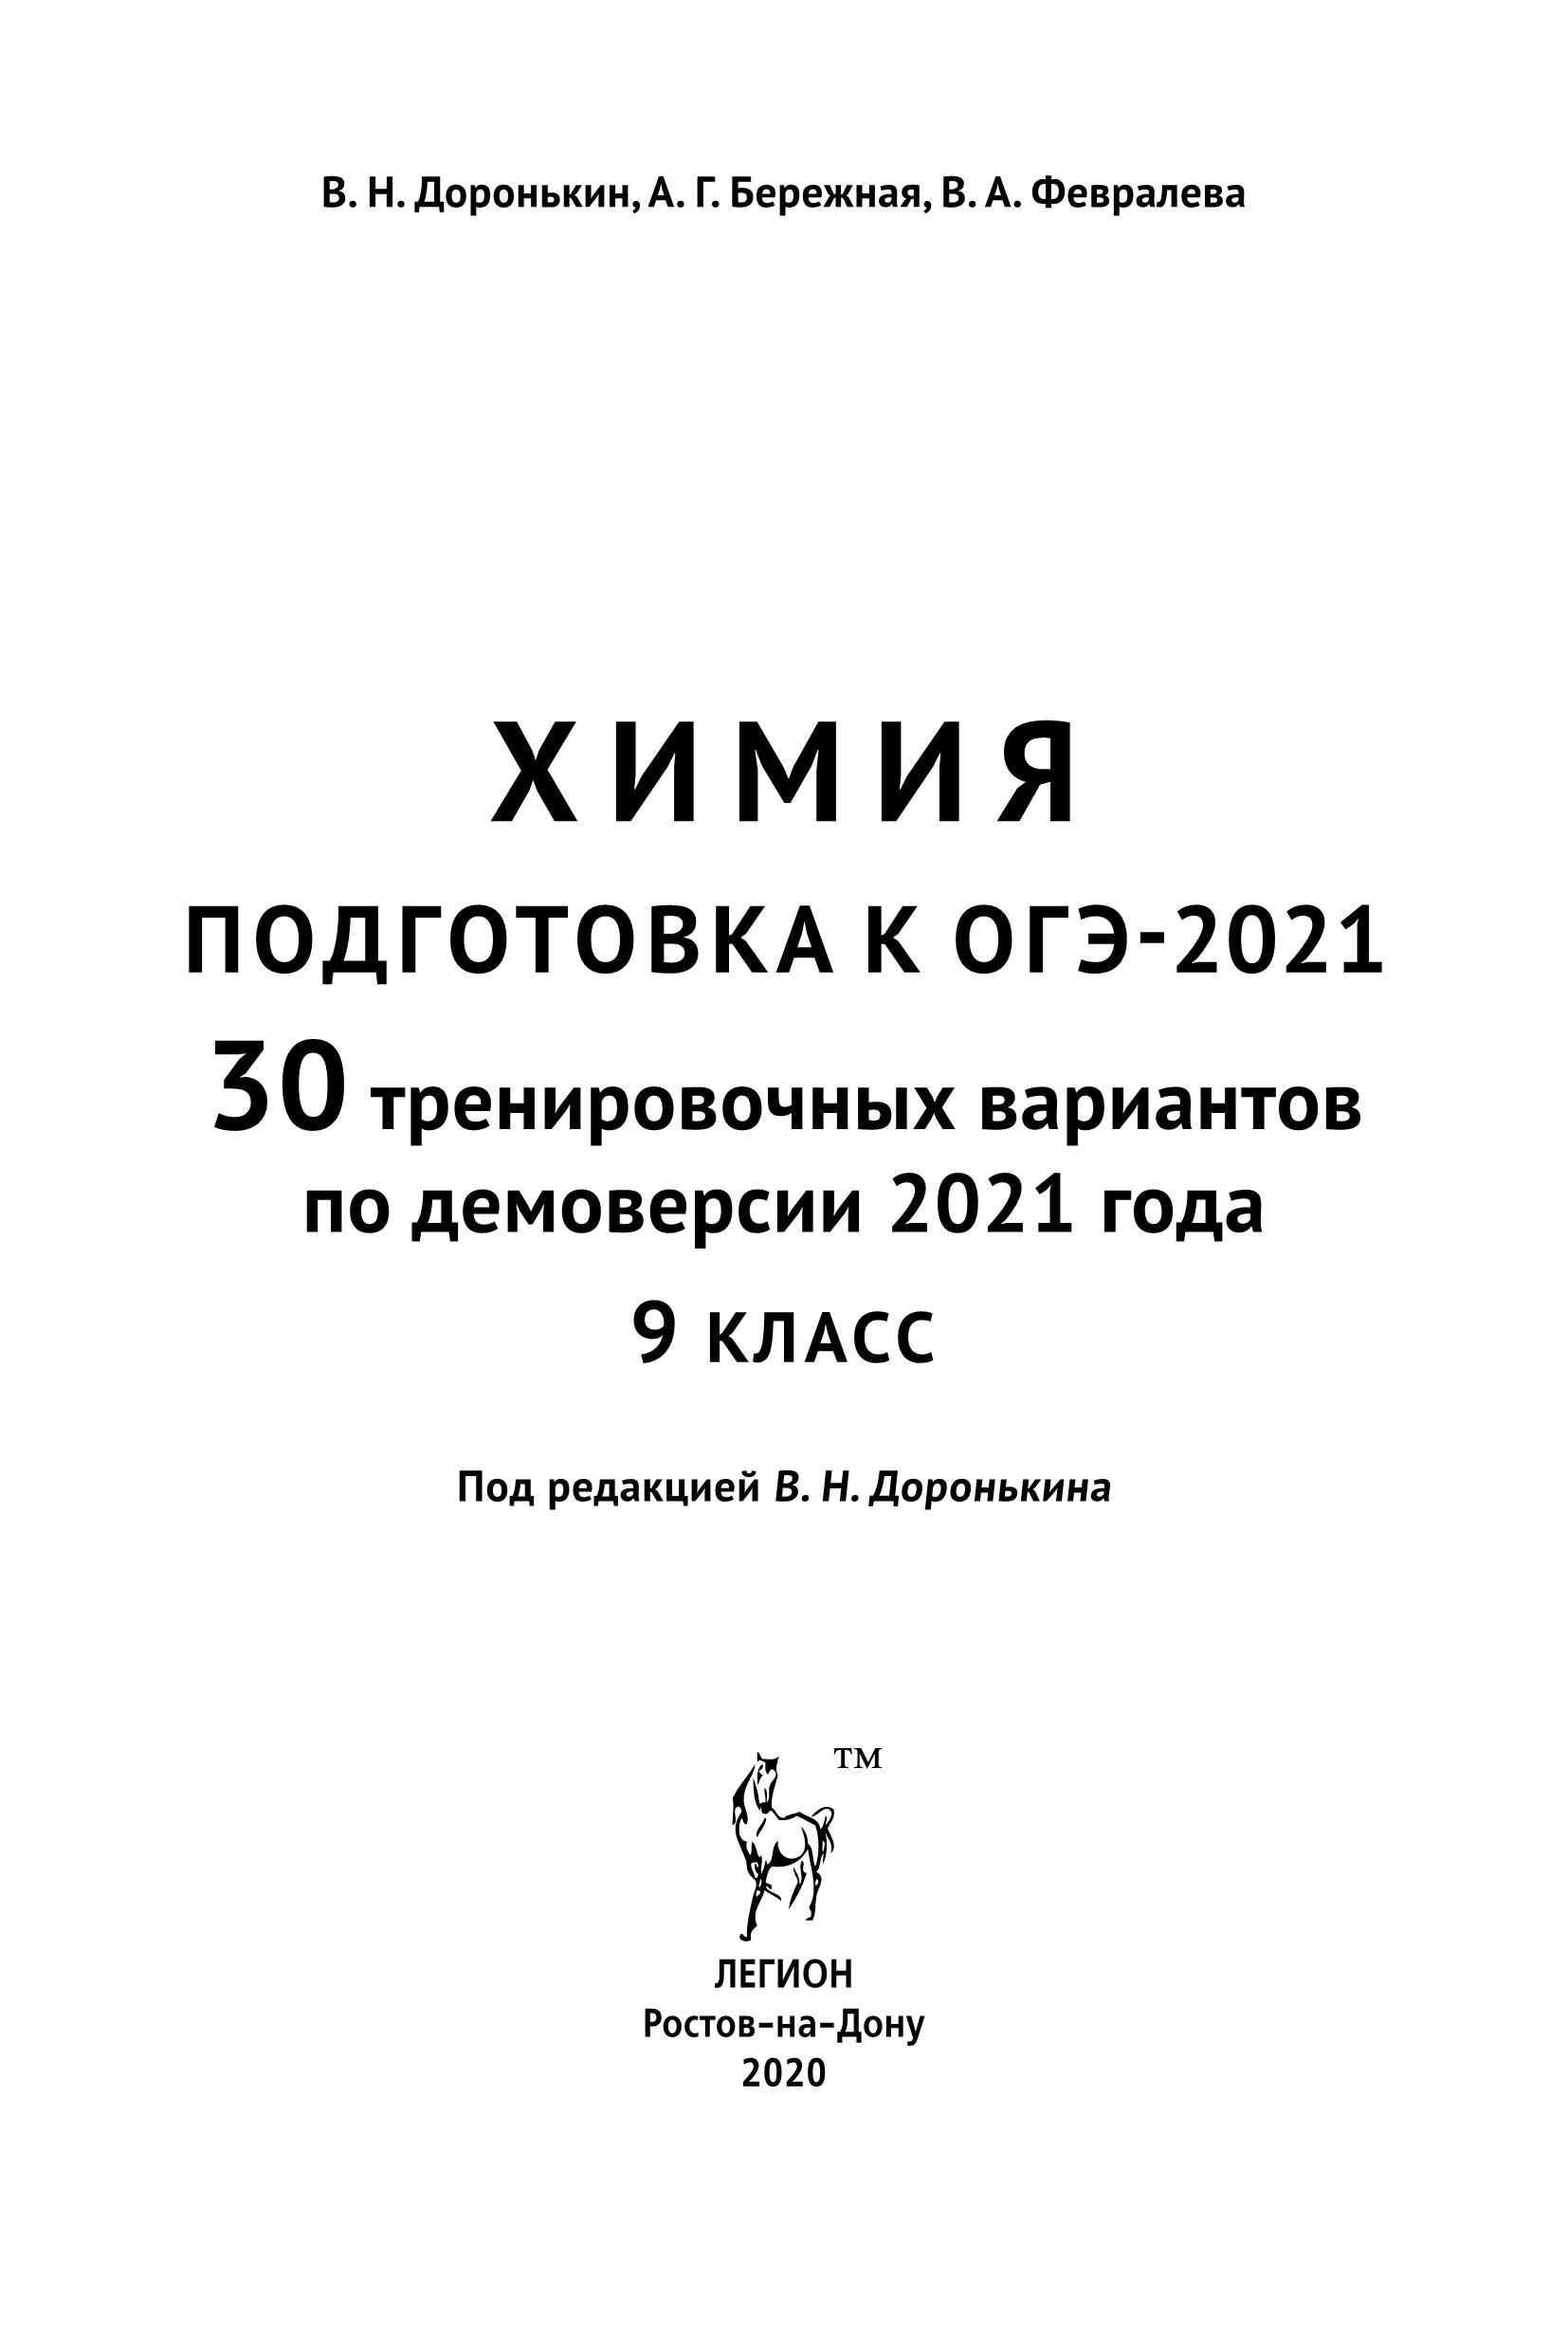 Химия. Подготовка к ОГЭ-2021. 9 класс. 30 тренировочных вариантов по демоверсии 2021 года